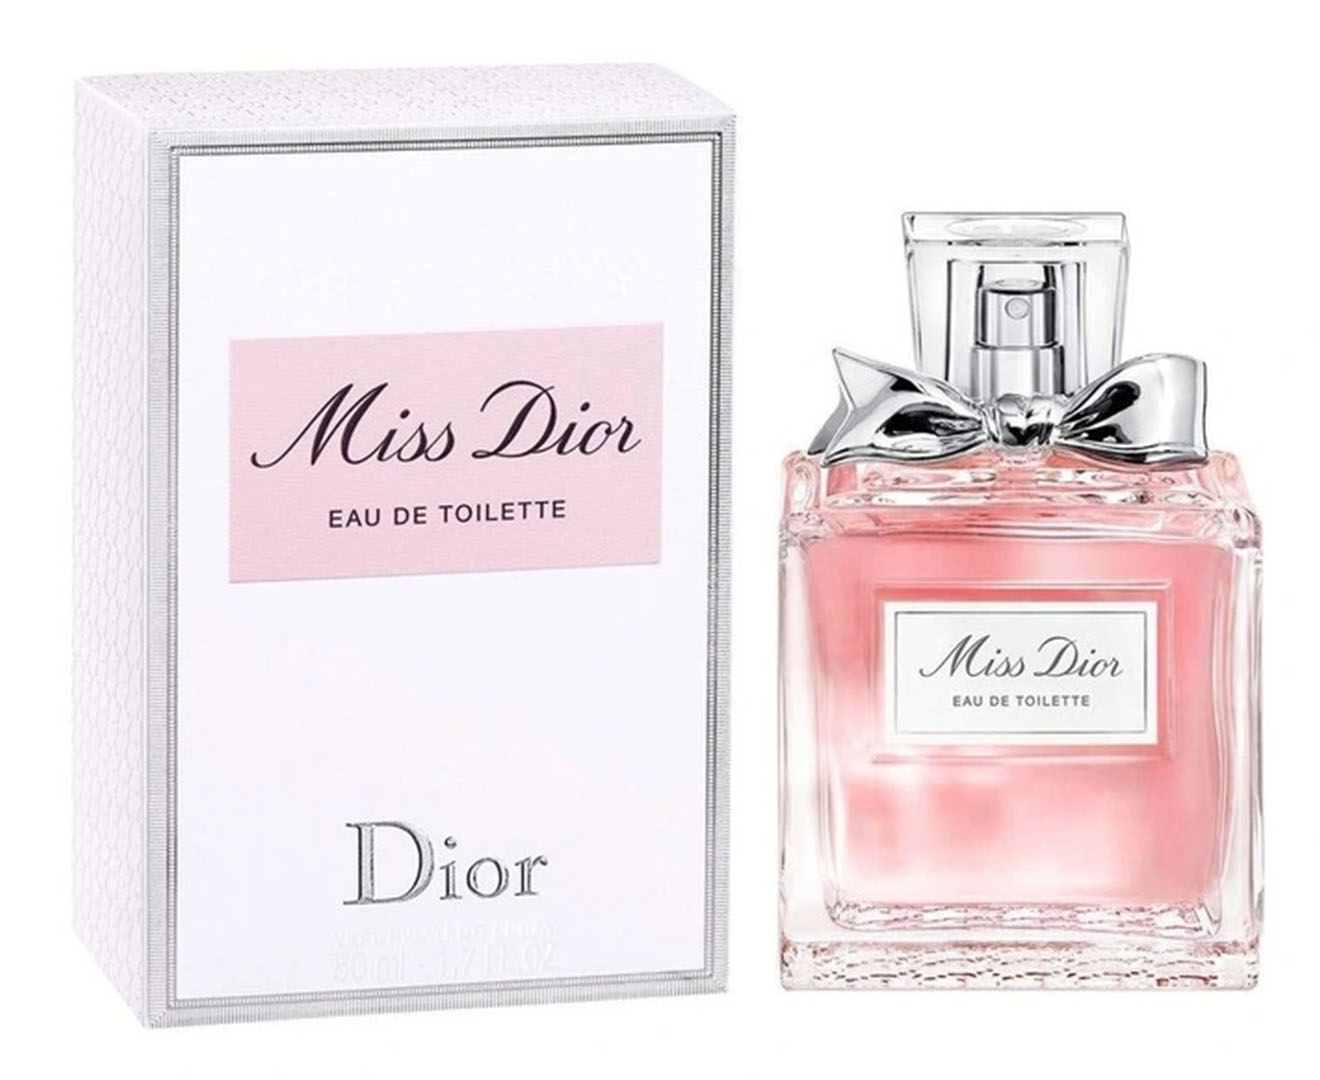 Miss Dior Eau de toilette originale  Womens Fragrance  Fragrance  DIOR